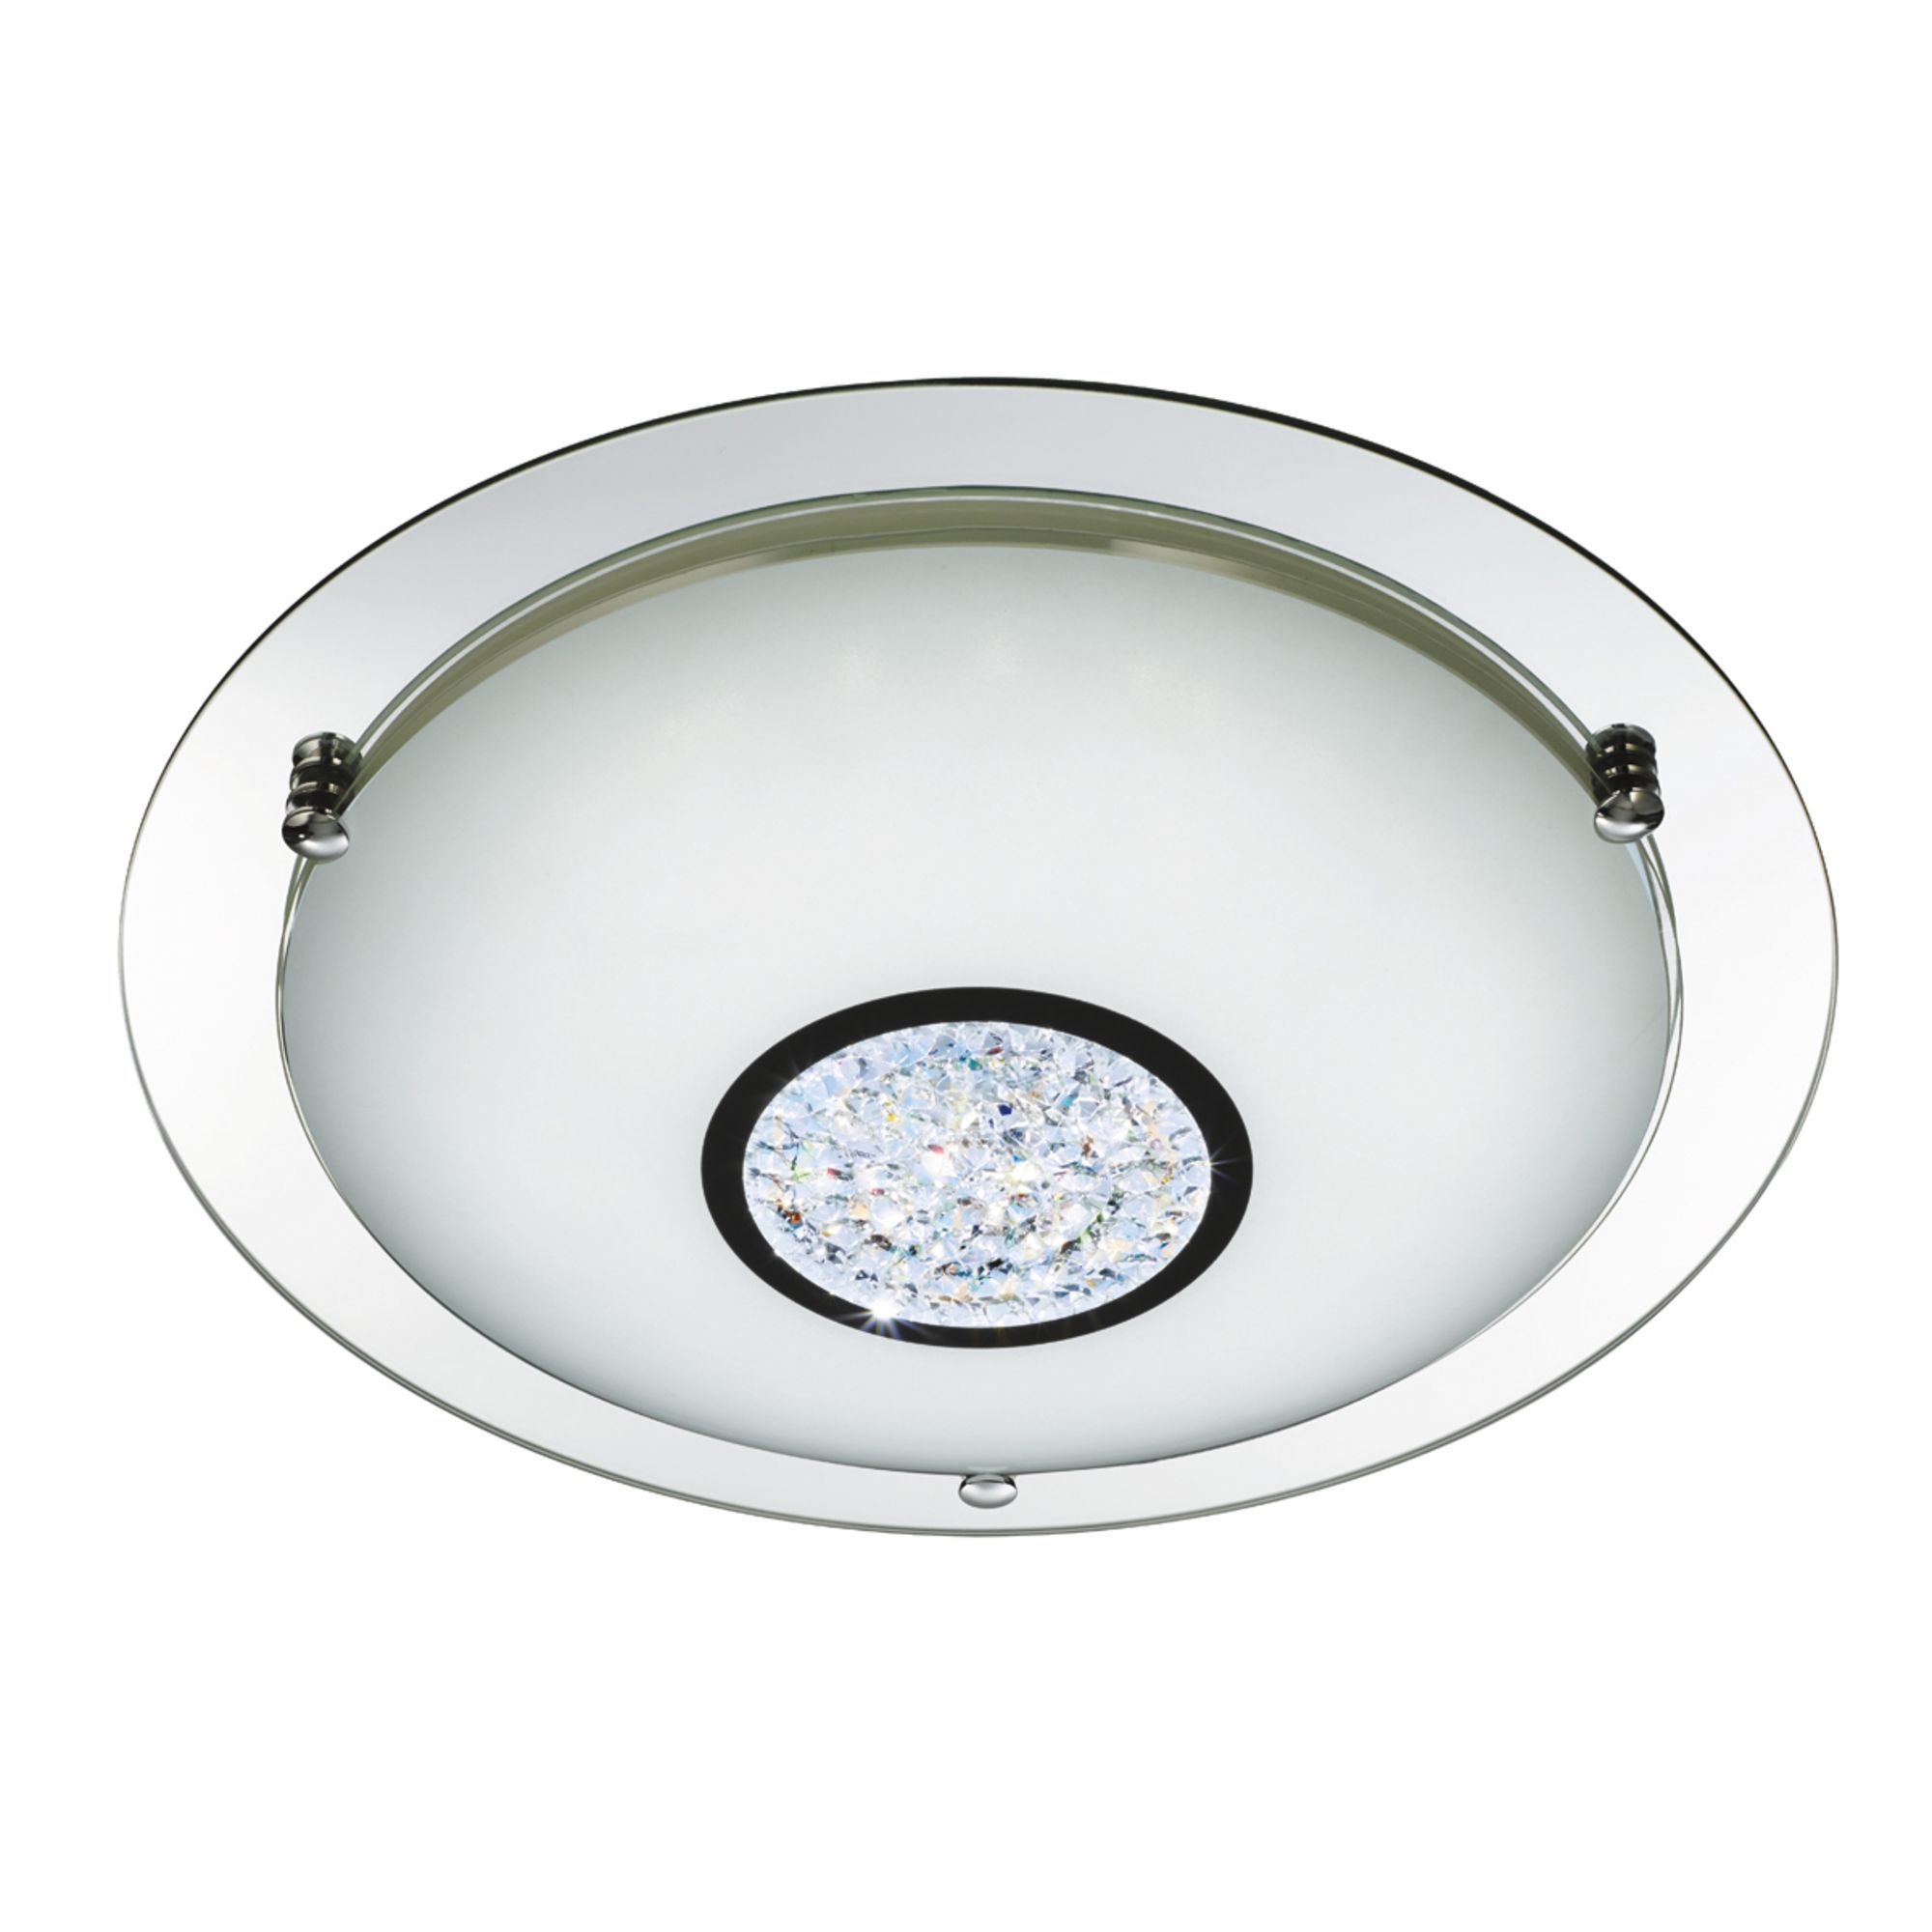 Searchlight LED Semi Flush Bathroom Ceiling Light Chrome Crystal IP44-4404-4CC 